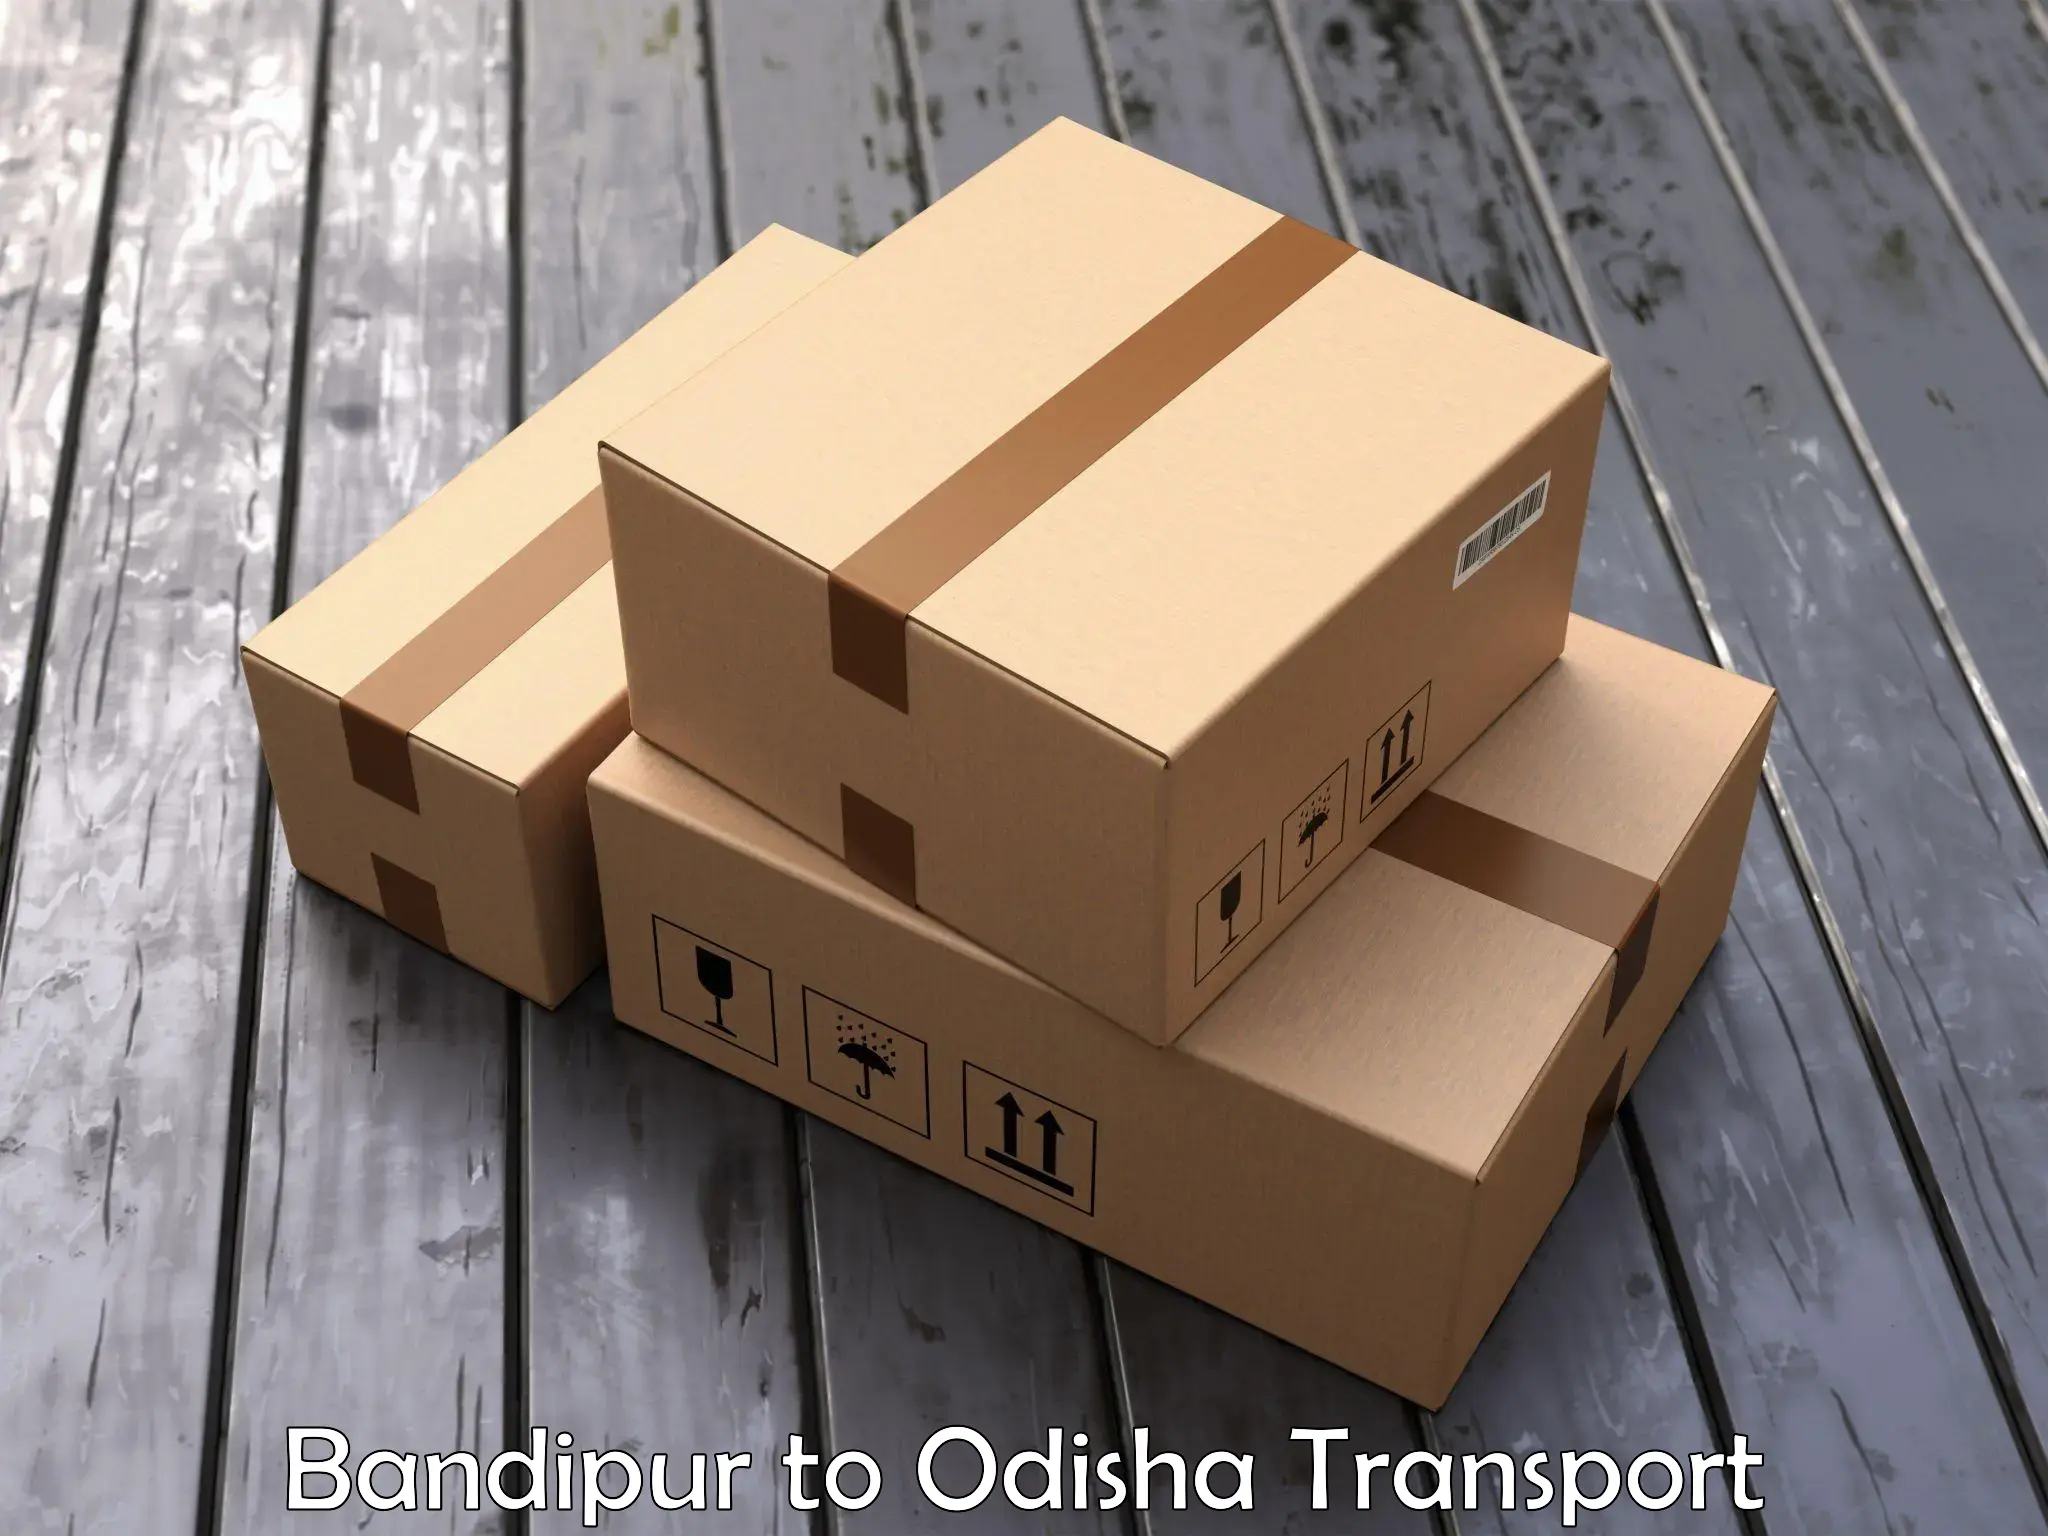 Furniture transport service Bandipur to Dhamanagar